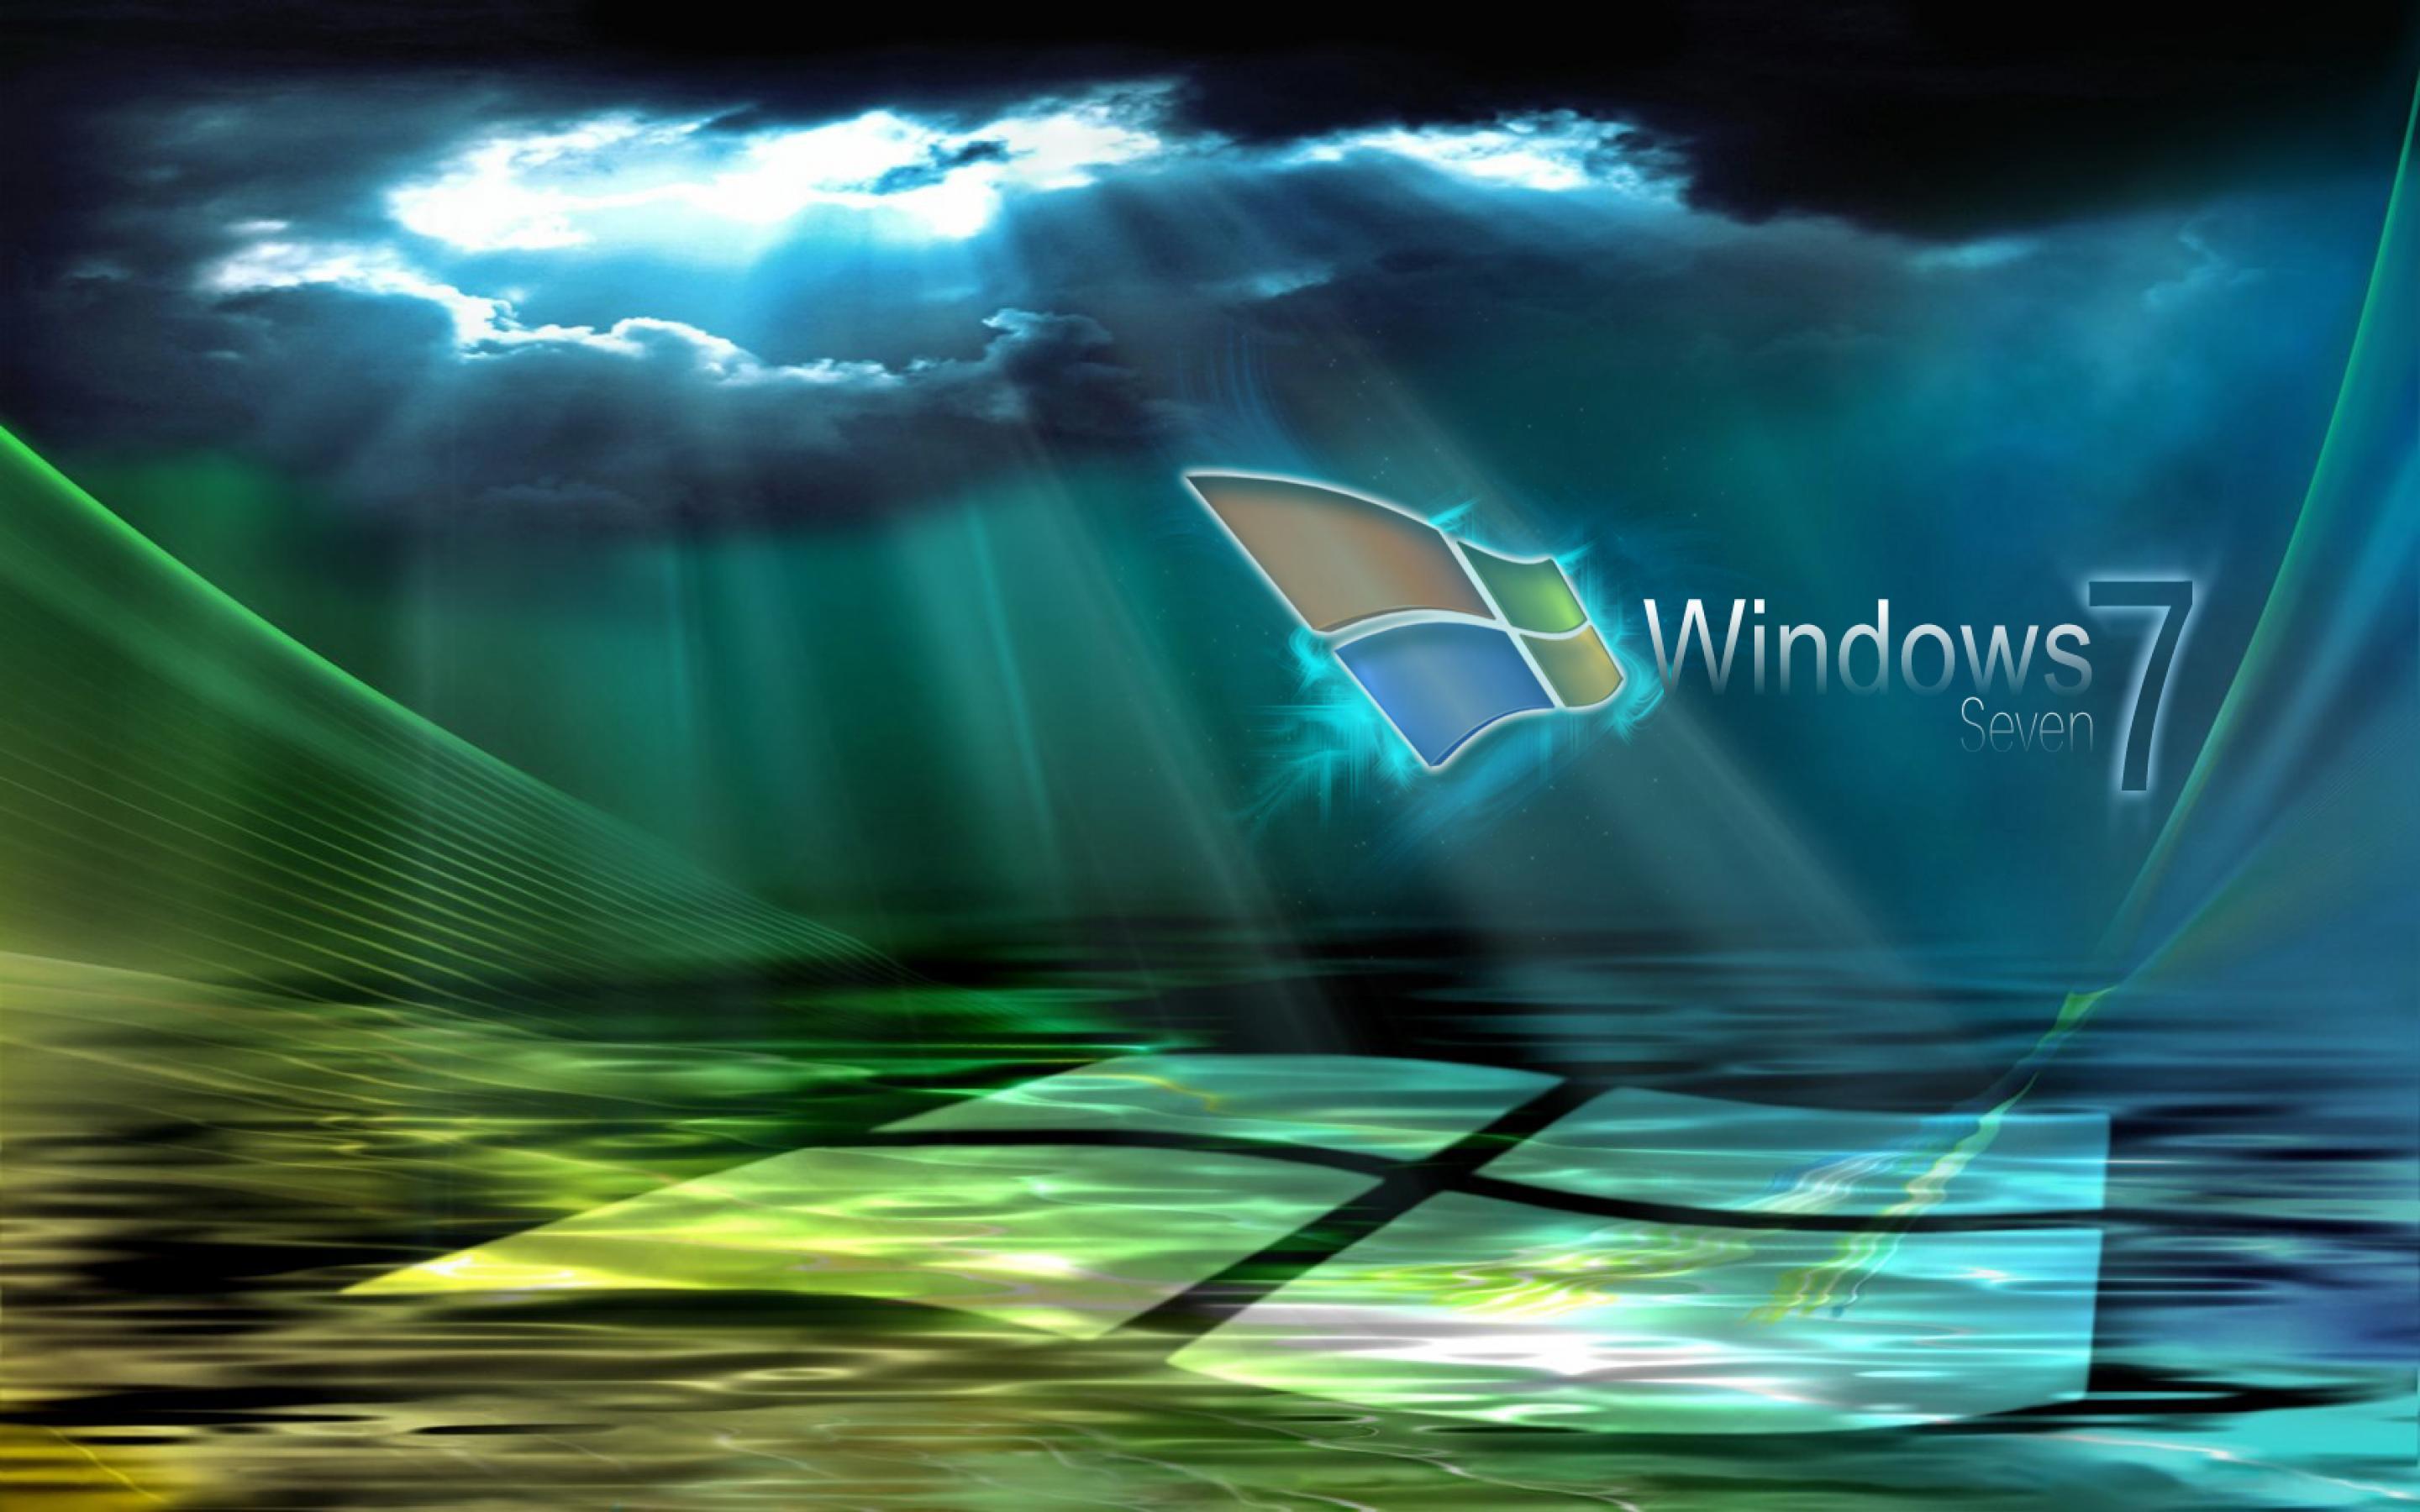 Cool Windows 7 HD Wallpaper. TanukinoSippo